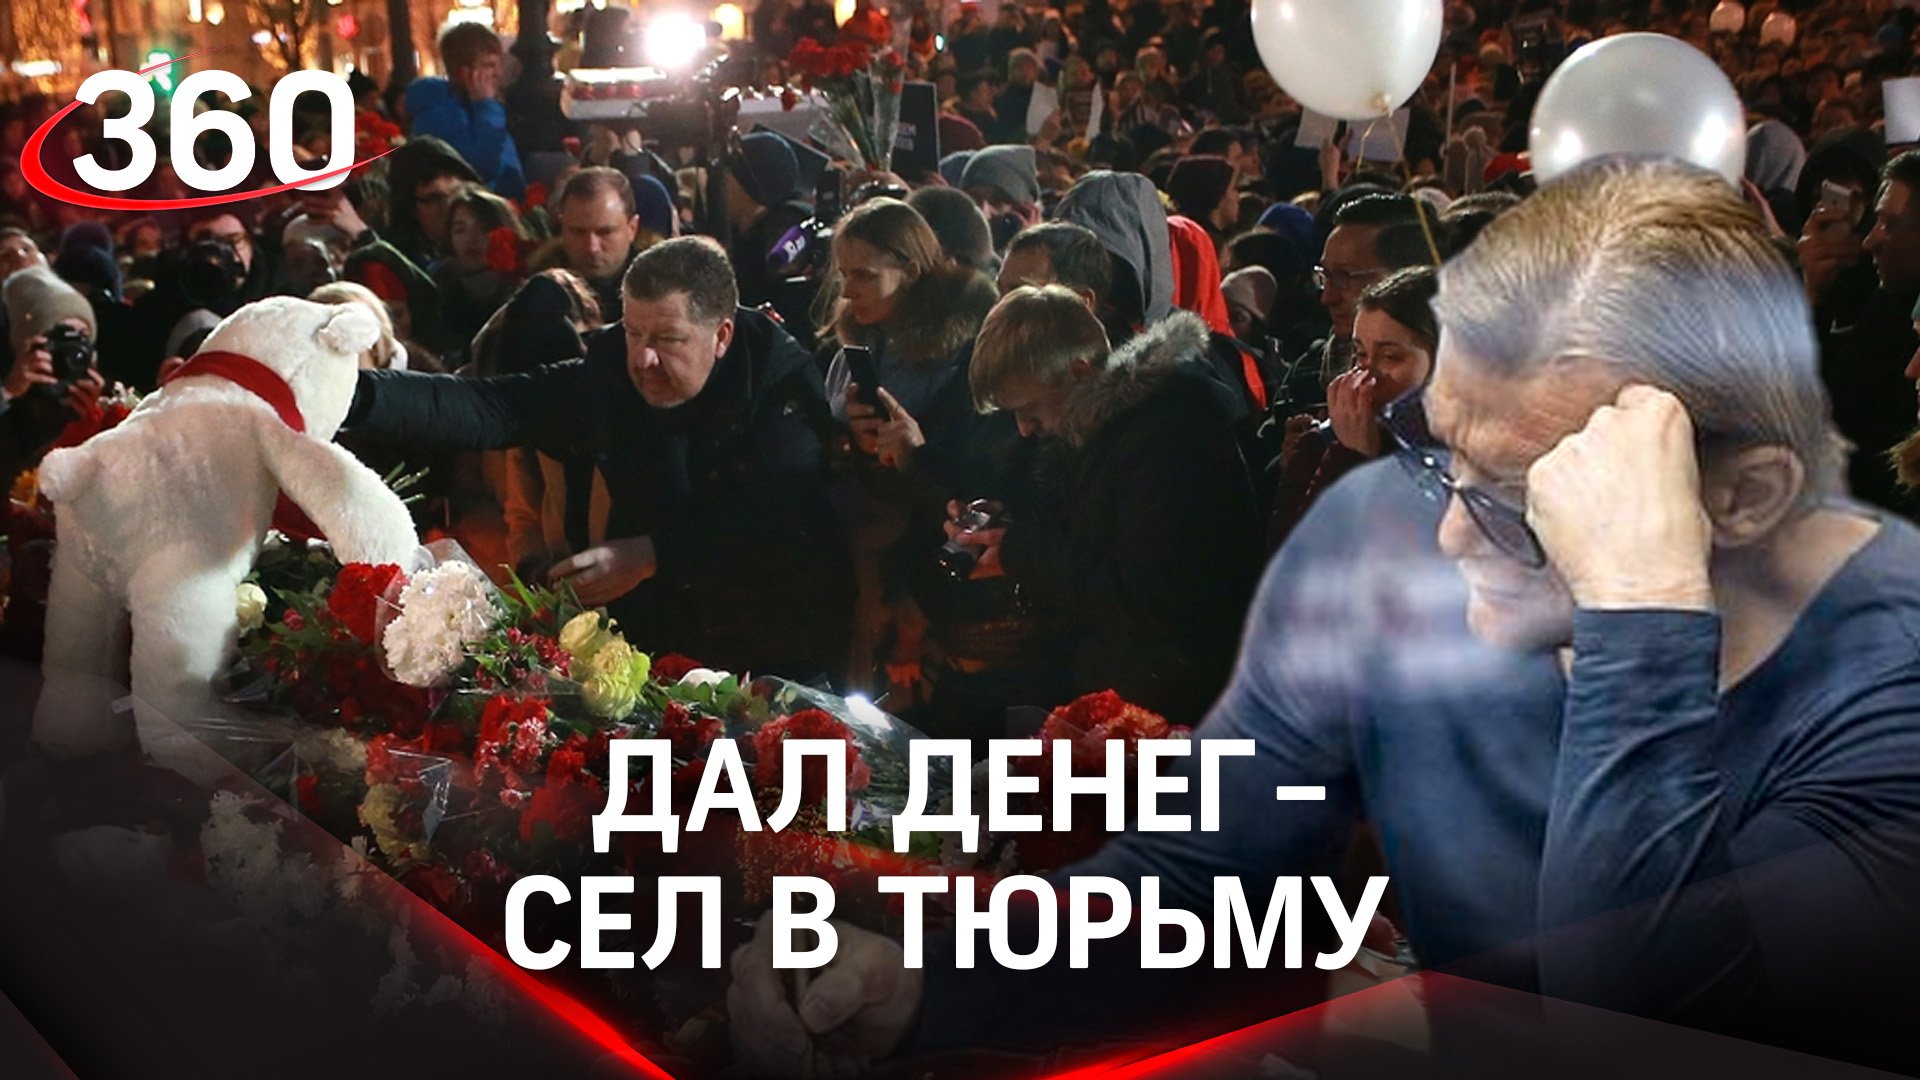 "ПРИГОВОР ЗА ВИШНЮ": генерального директора Кемеровского ТЦ лишили свободы и вогнали в долги